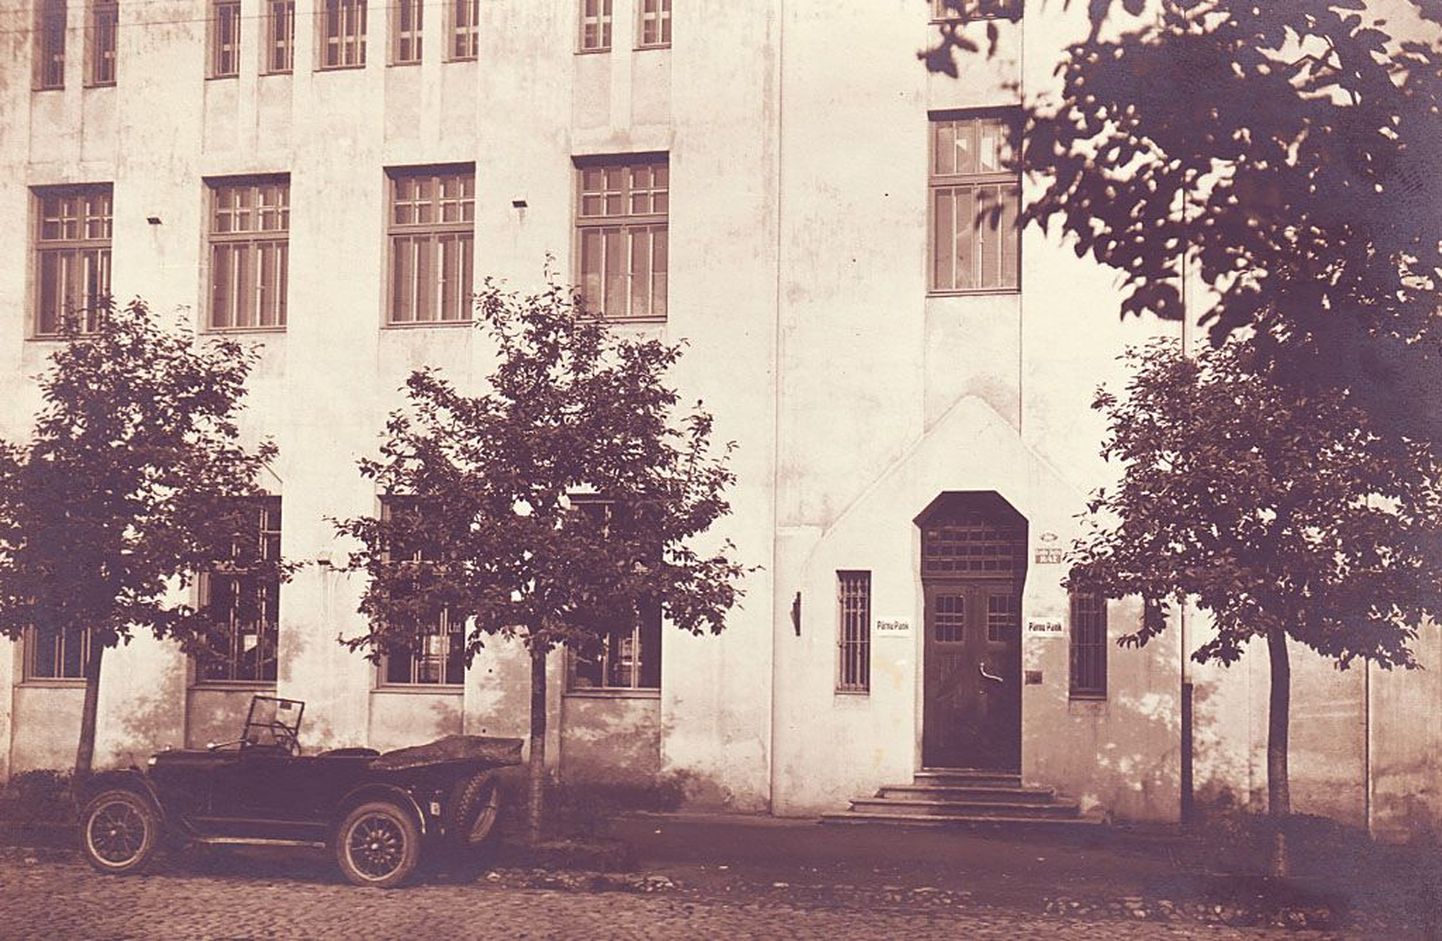 AS Pärnu Pank tegutses enne pankrotti Endla teatrimajas, mille ehituse rahastamist oli pank toetanud. Saksa okupatsiooni ajal panga tegevus jätkus, nii pank kui teater hävisid ilmasõja kahjutules 1944. aasta septembris.